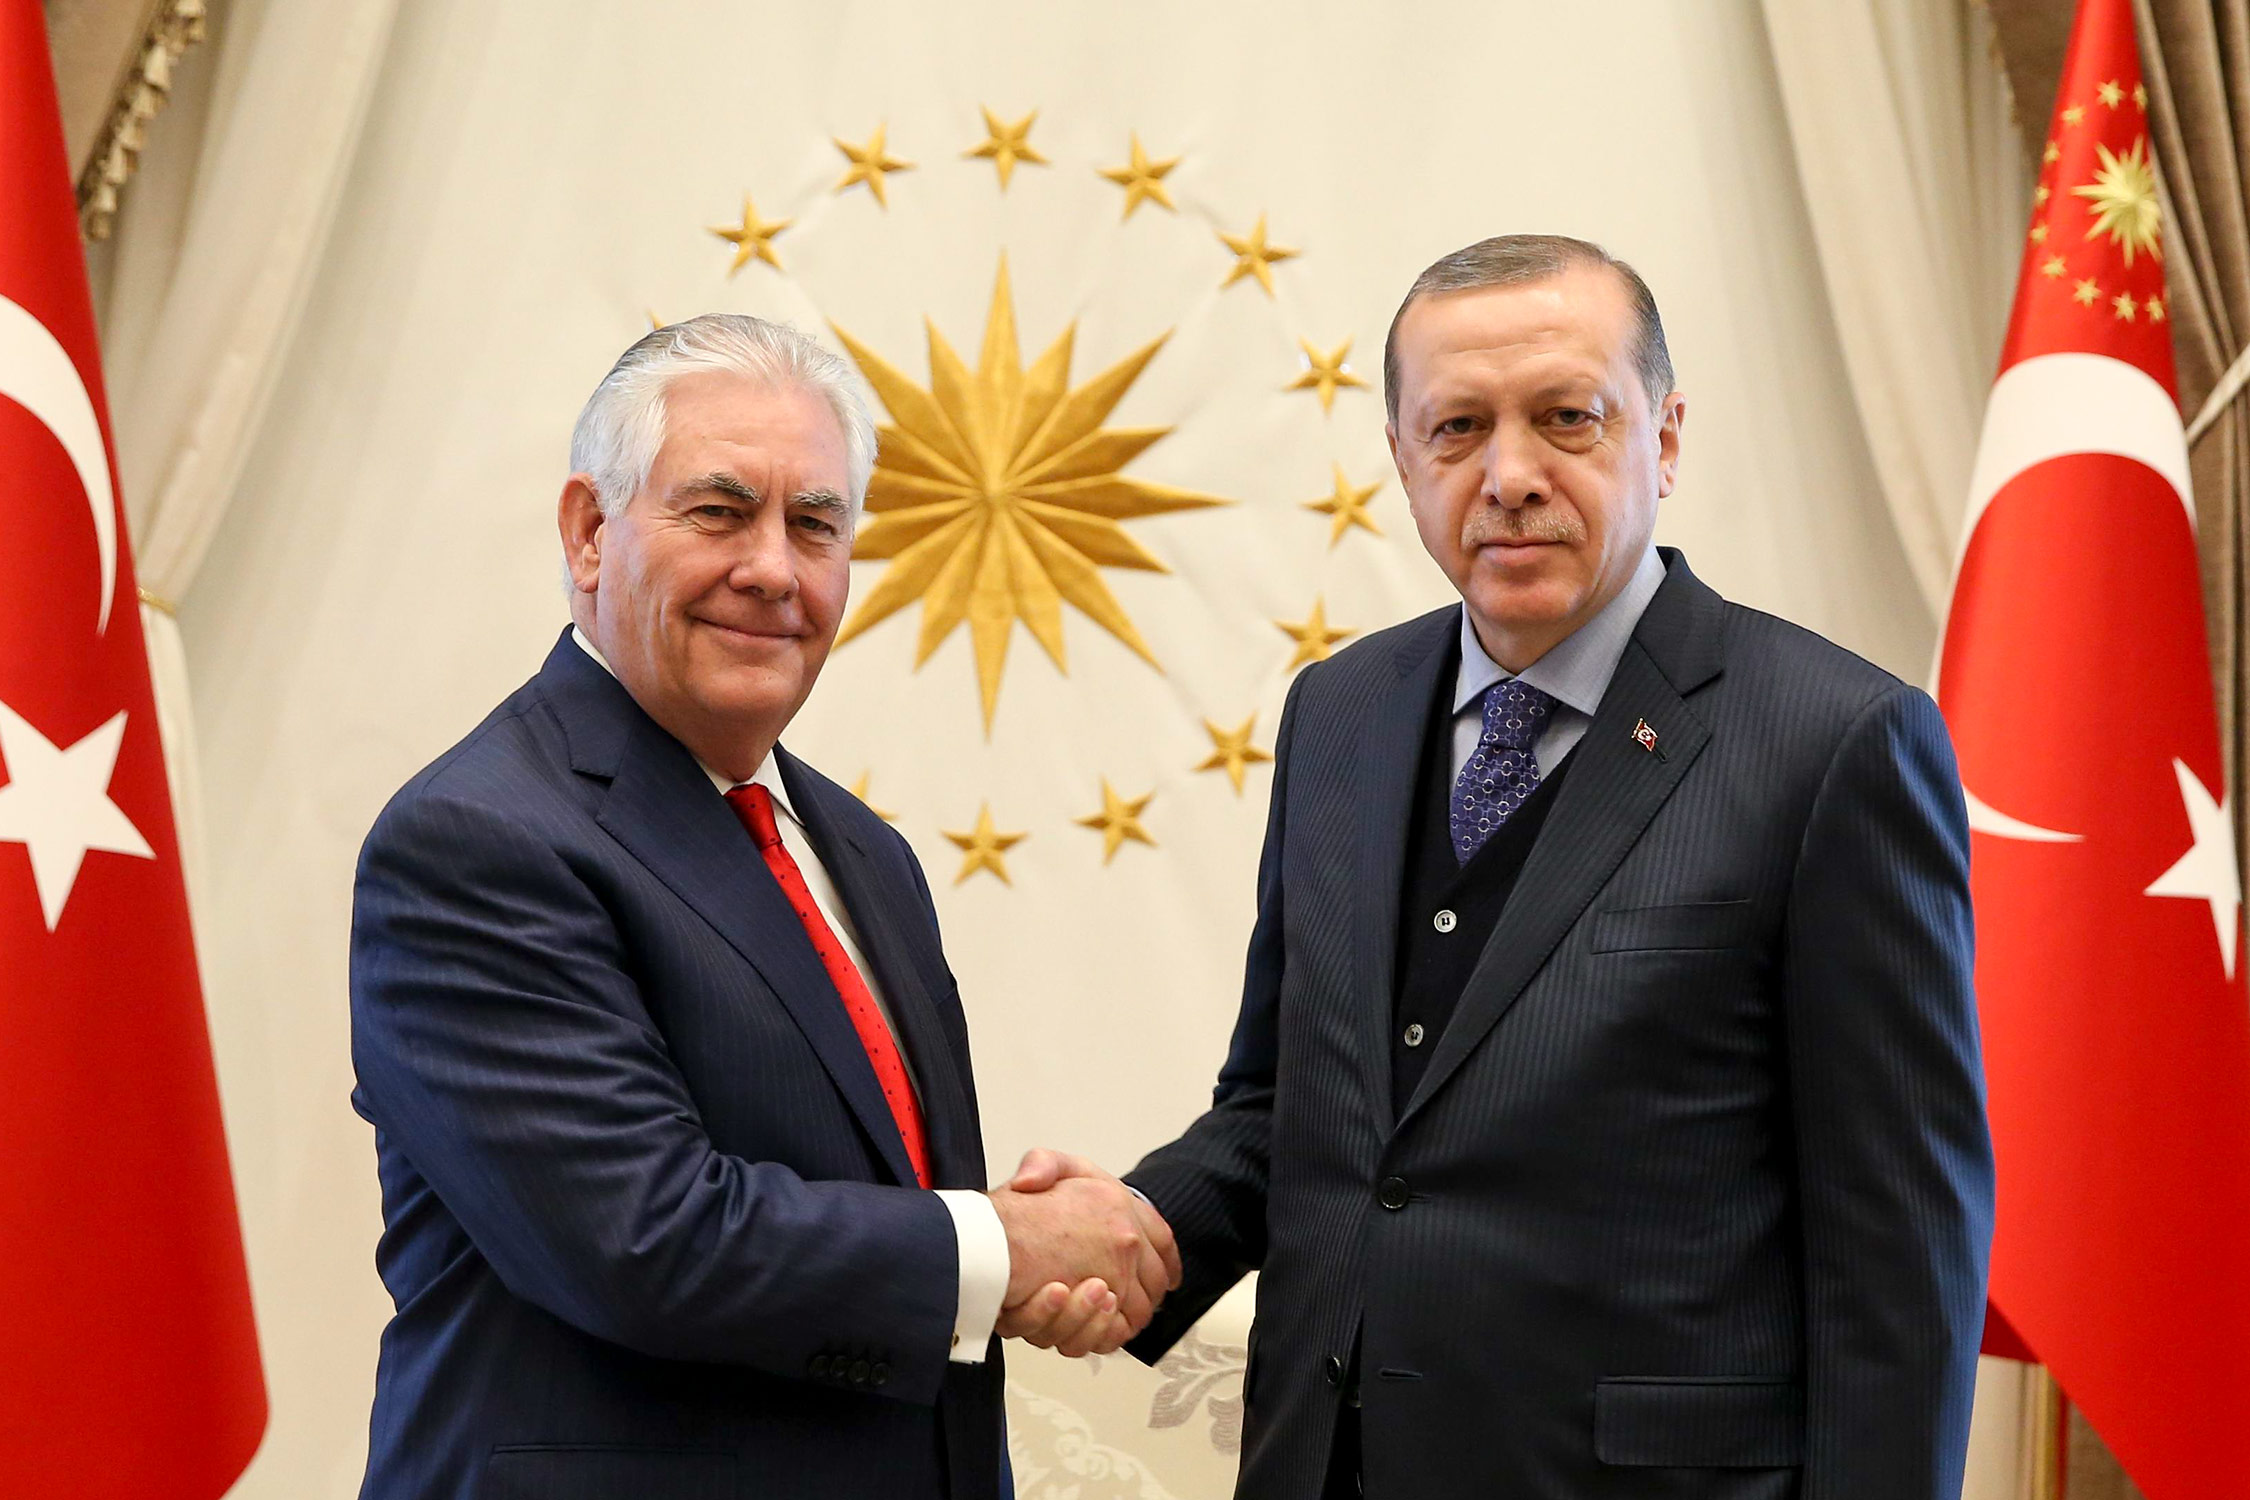 Rex Tillerson with Recep Tayyip Erdogan